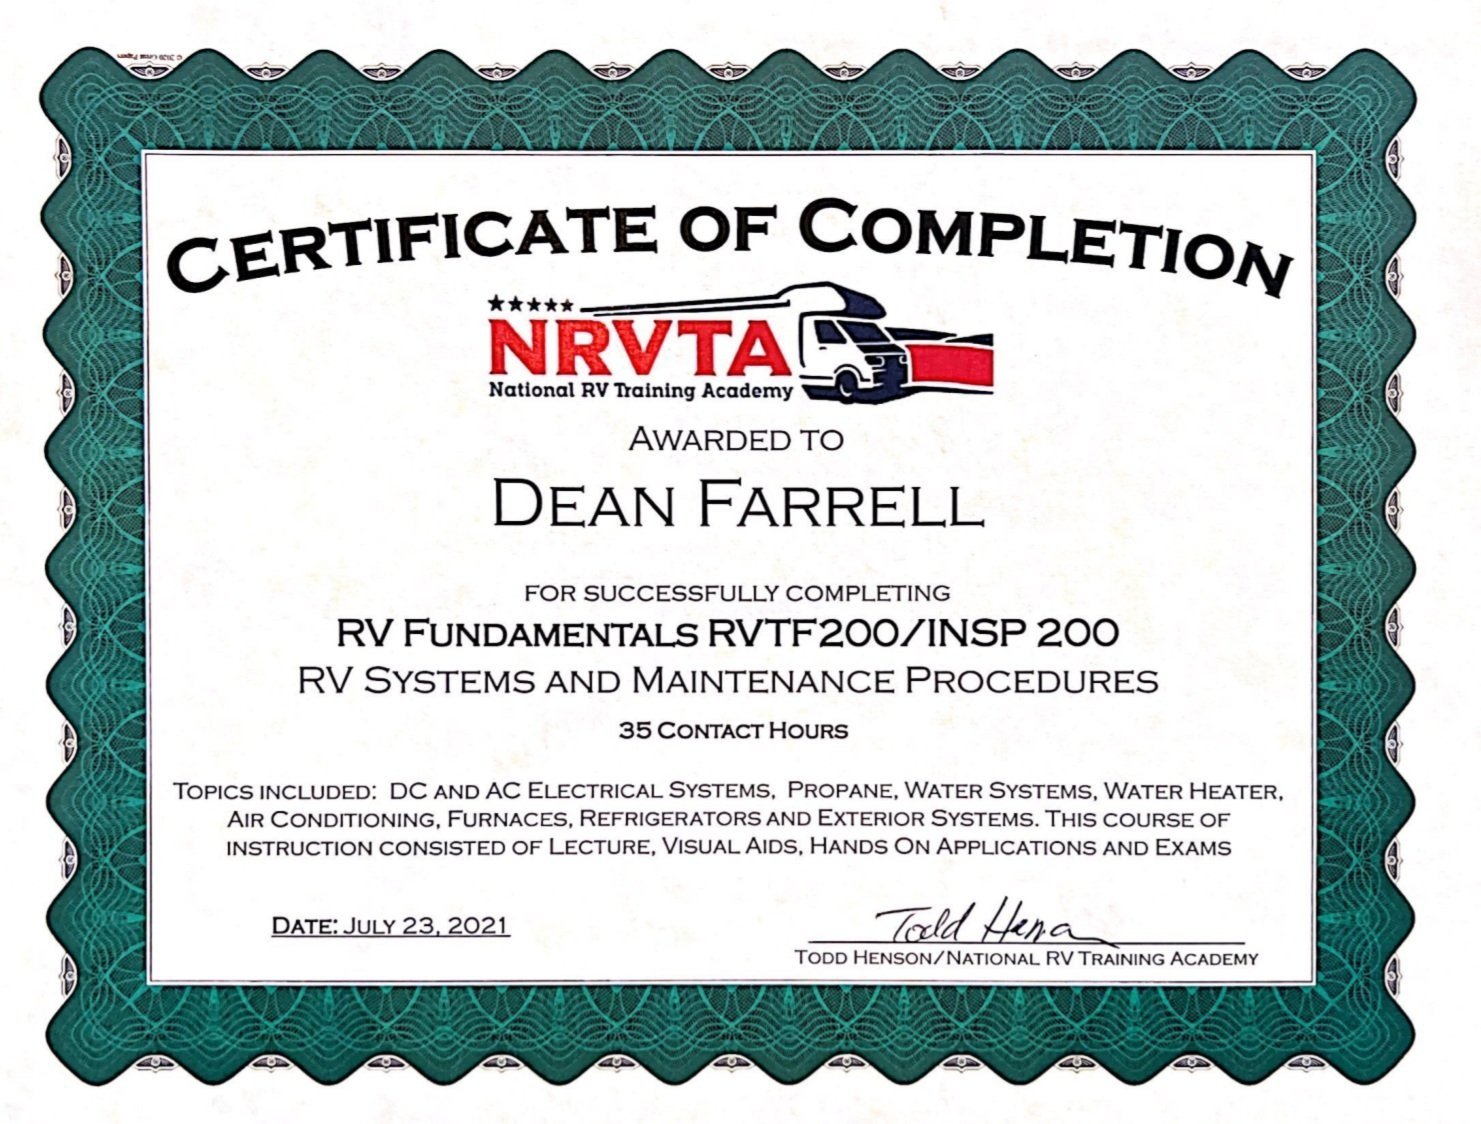  TREK RV Dean Farrell Certificate of Completion NRVTA 